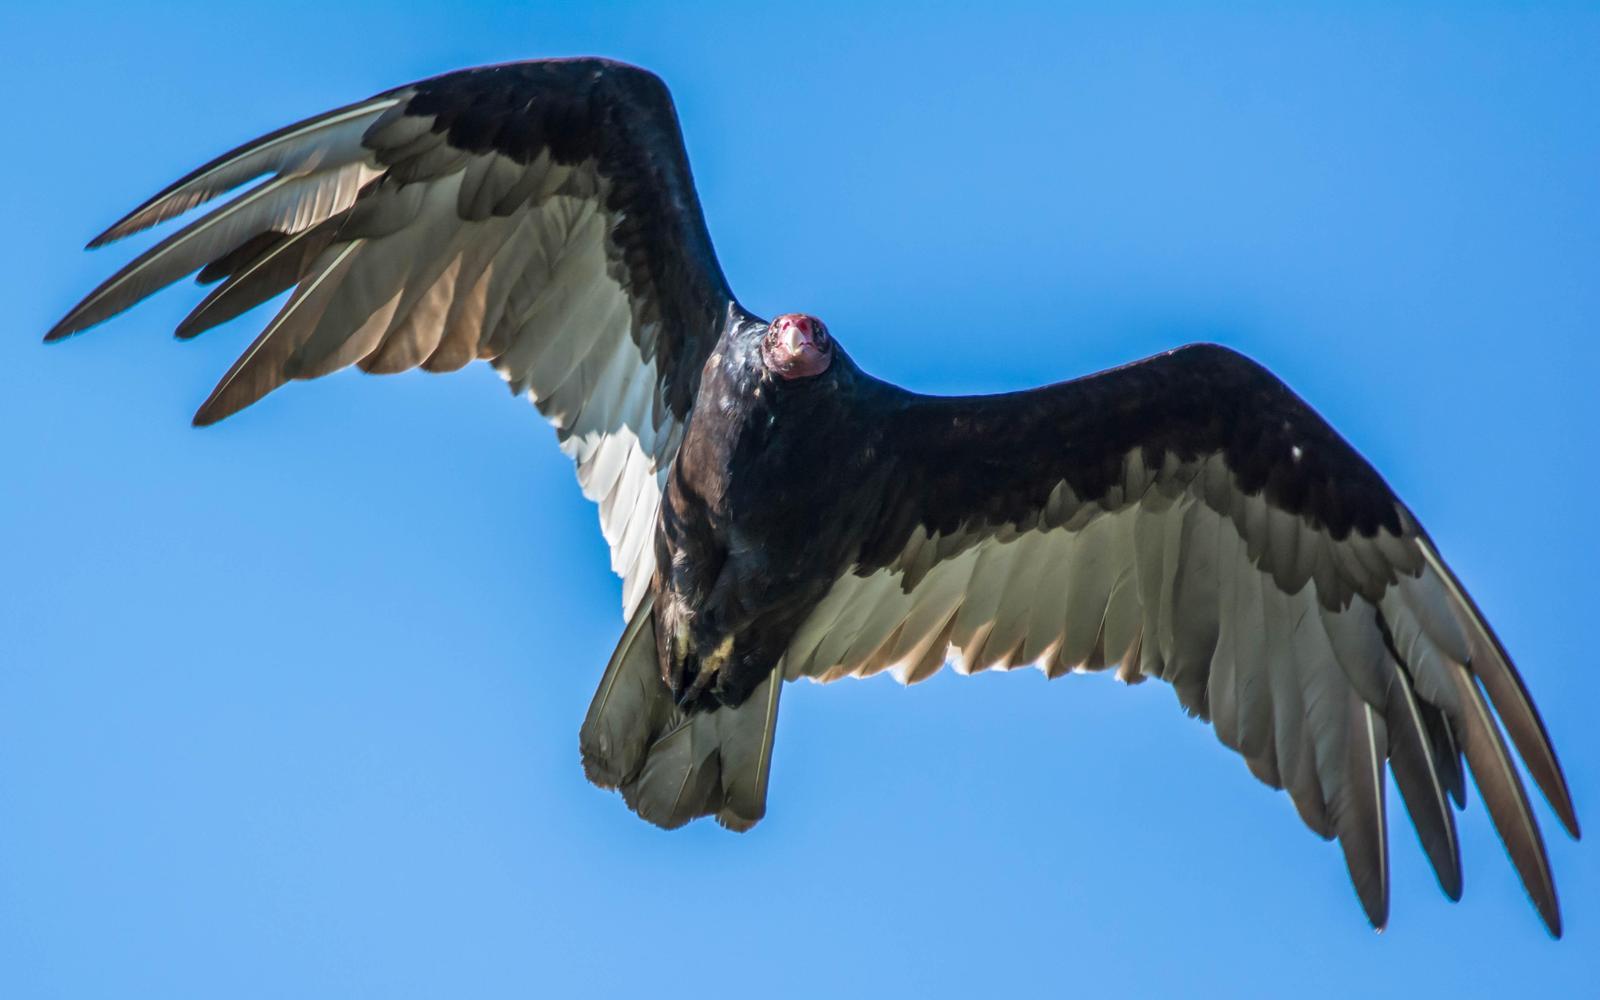 Turkey Vulture Photo by Karen Prisby